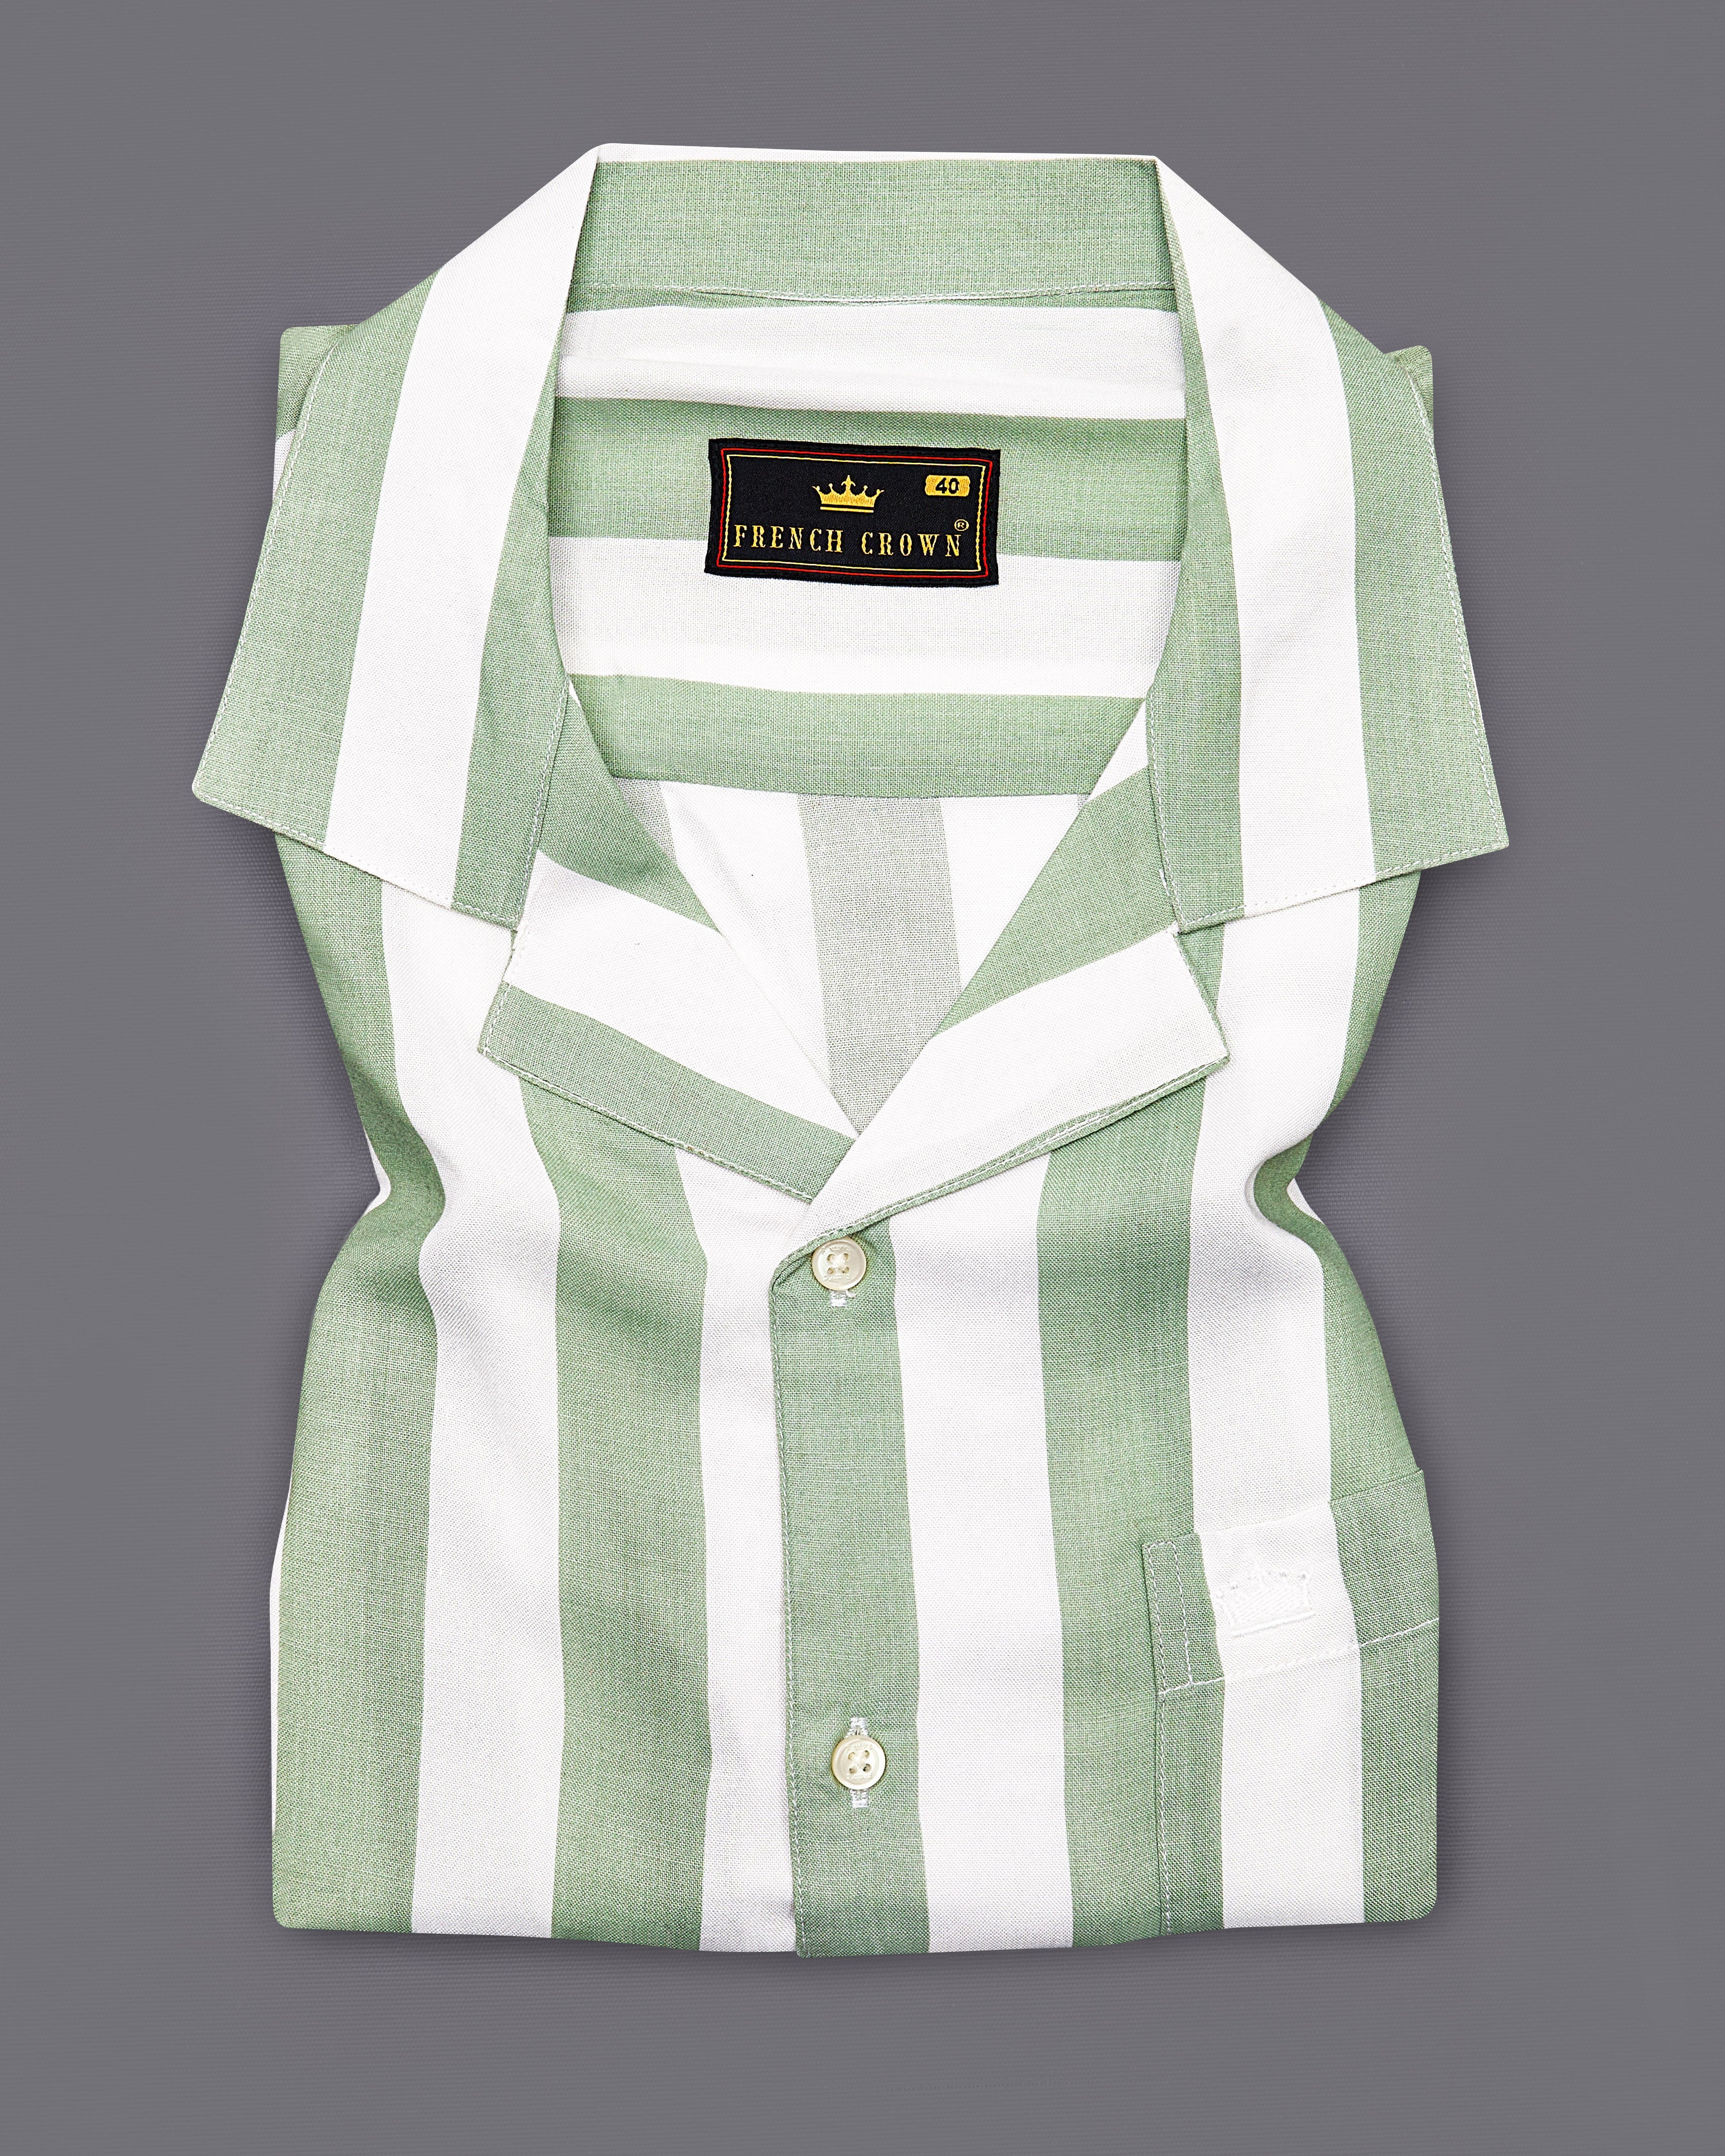 Coriander Green with Bright White Striped Premium Tencel Shirt  8795-CC-38,8795-CC-H-38,8795-CC-39,8795-CC-H-39,8795-CC-40,8795-CC-H-40,8795-CC-42,8795-CC-H-42,8795-CC-44,8795-CC-H-44,8795-CC-46,8795-CC-H-46,8795-CC-48,8795-CC-H-48,8795-CC-50,8795-CC-H-50,8795-CC-52,8795-CC-H-52